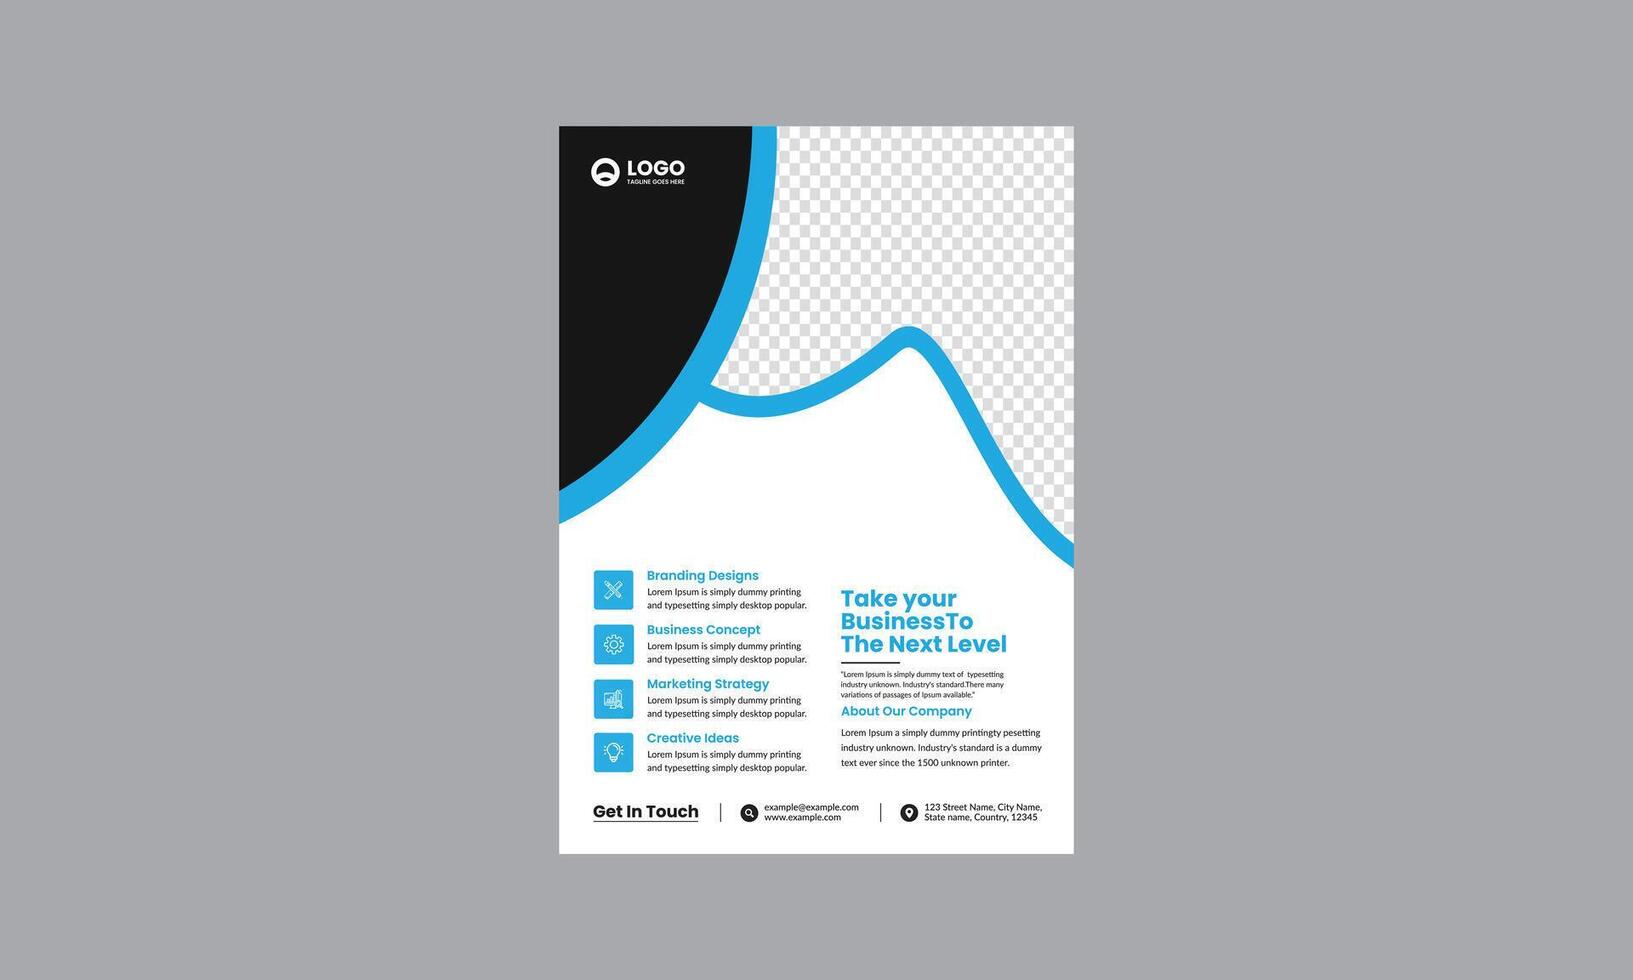 jährlich Bericht Broschüre Flyer Design Vorlage Vektor, Flugblatt, Präsentation Buch Startseite Vorlagen, Layout im a4 Größe vektor